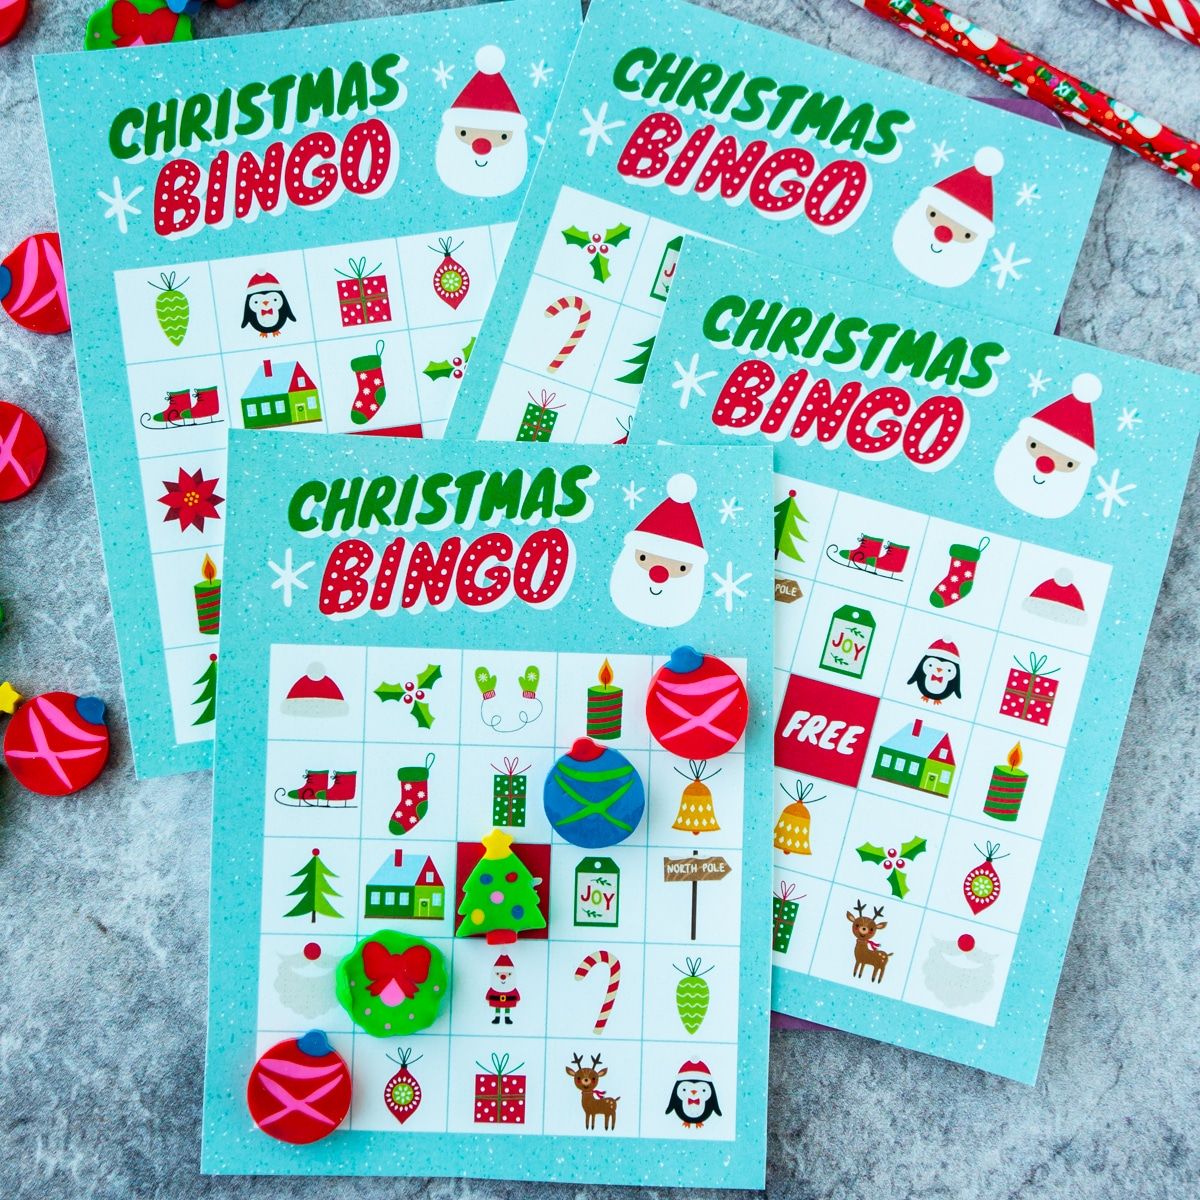 Quatre cartes de bingo nadalenc apilades unes sobre les altres